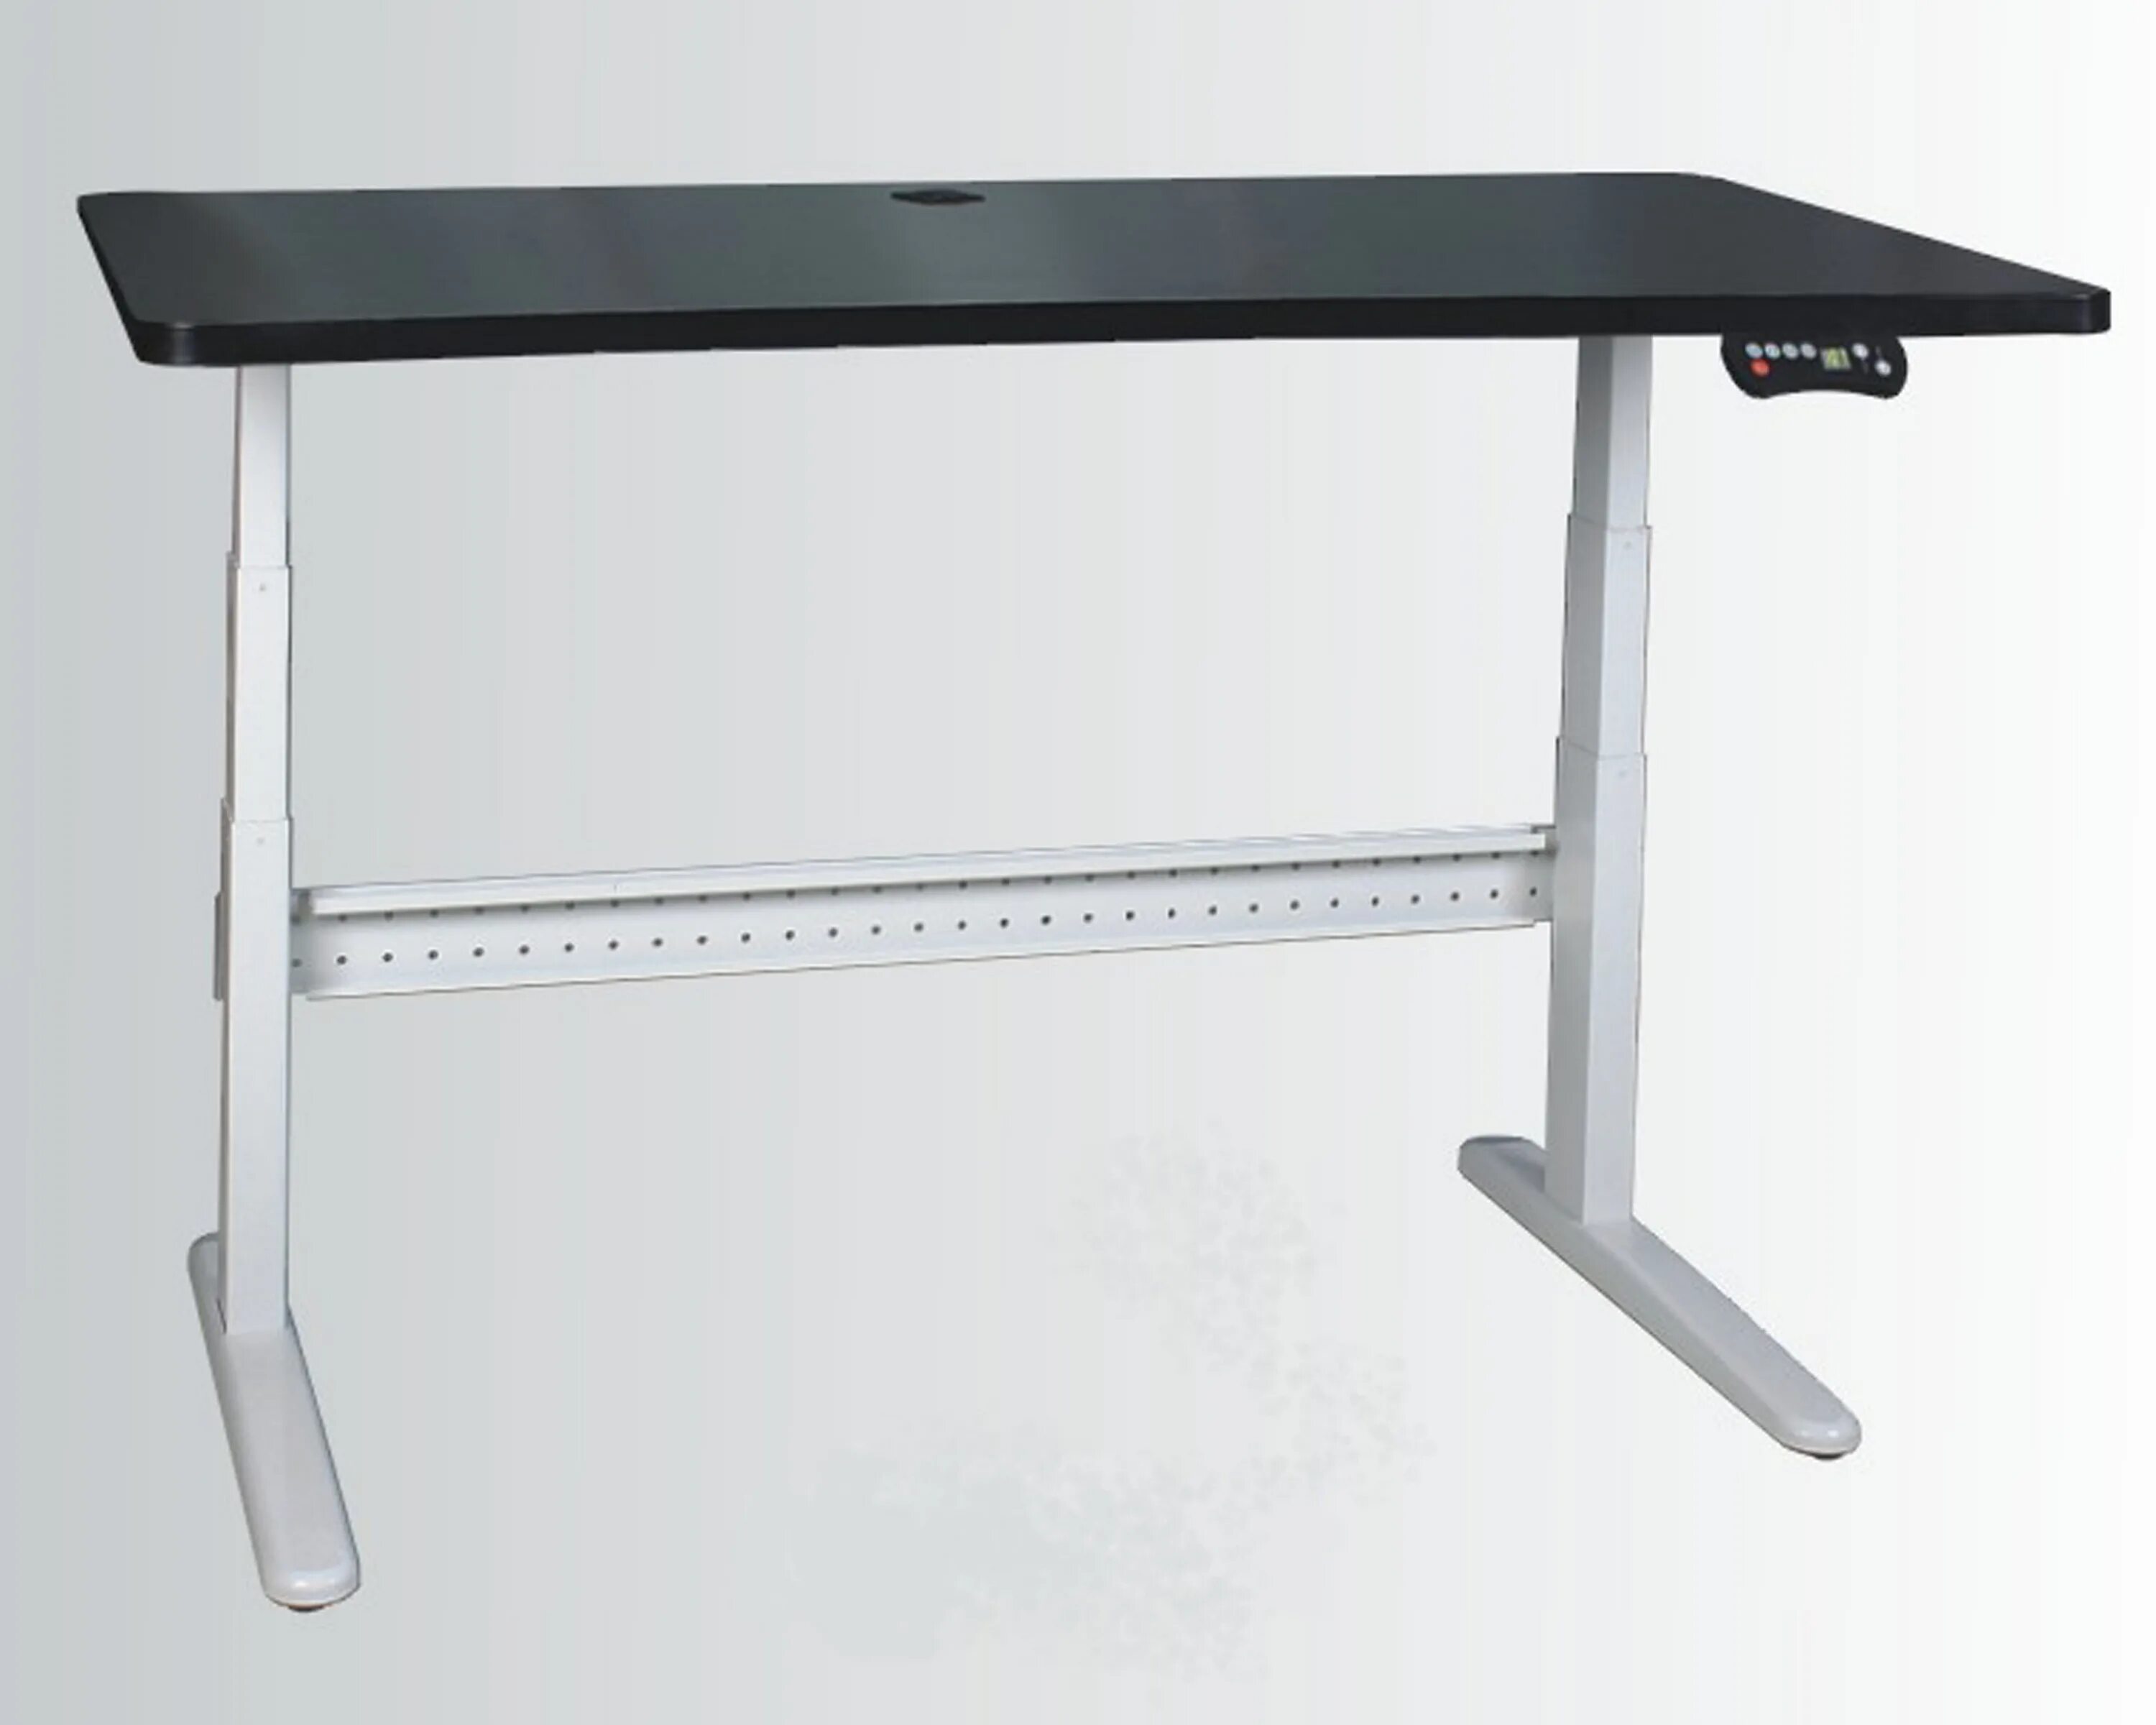 Стол высотой 900. Zamm стол регулируемый. Стол регулируемый по высоте Ямагучи. Ikea стол регулируемый по высоте. Стол икеа который регулируется по высоте.